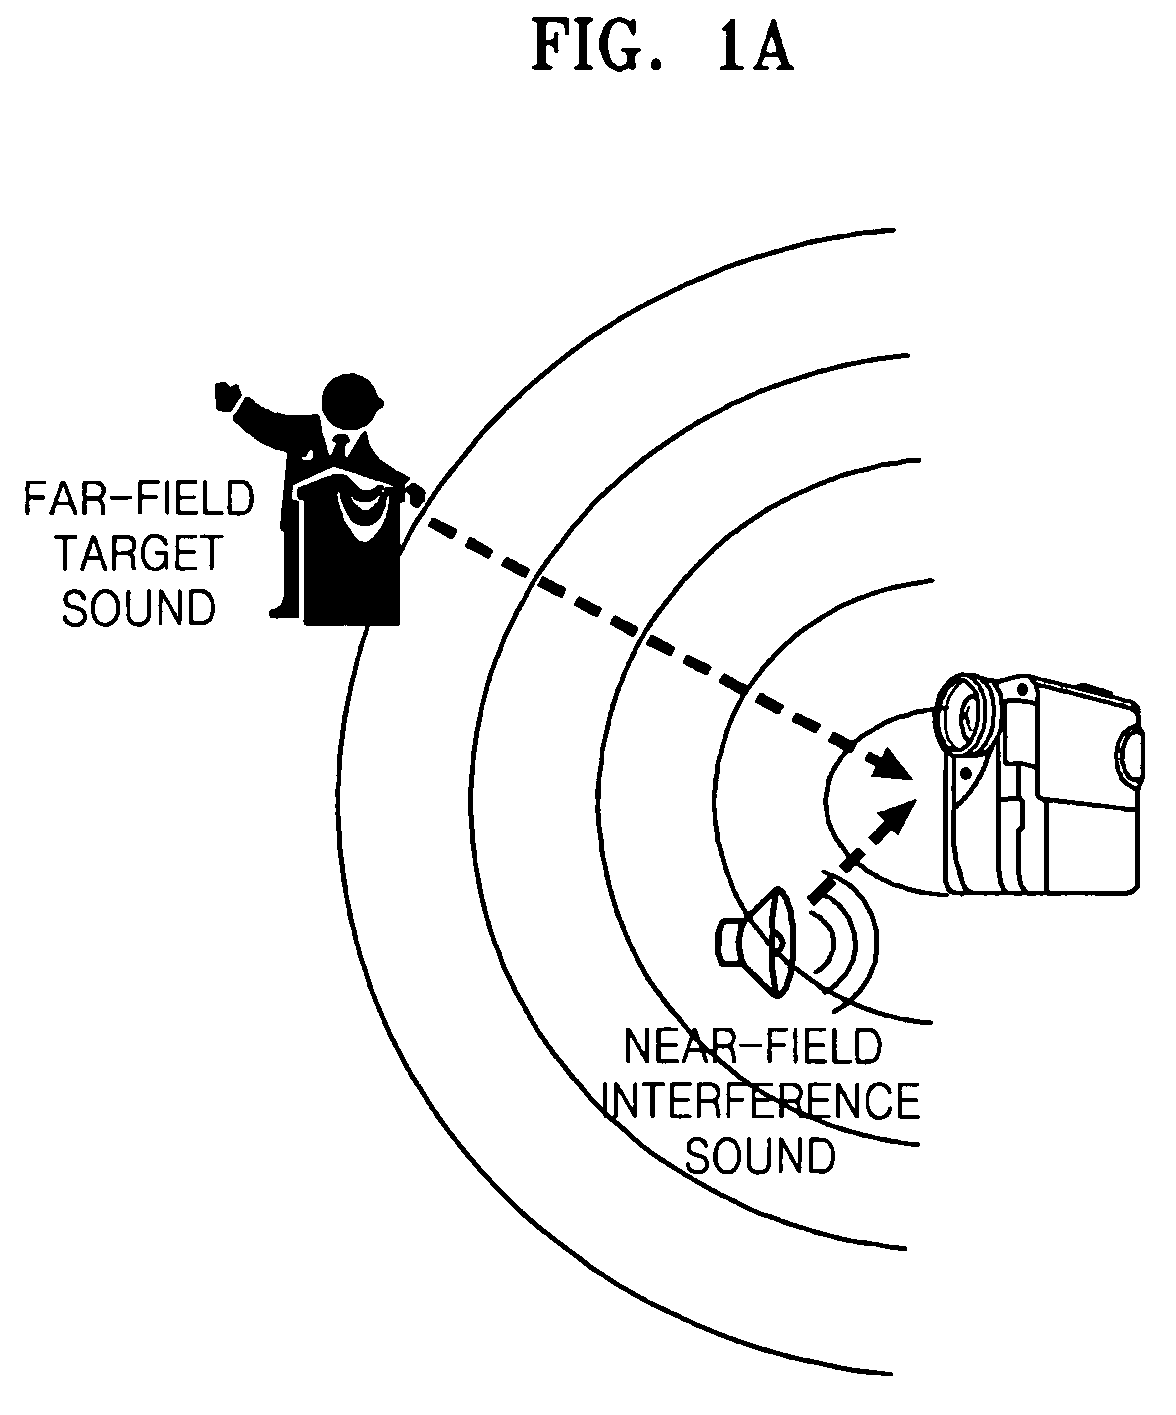 Sound zoom method, medium, and apparatus